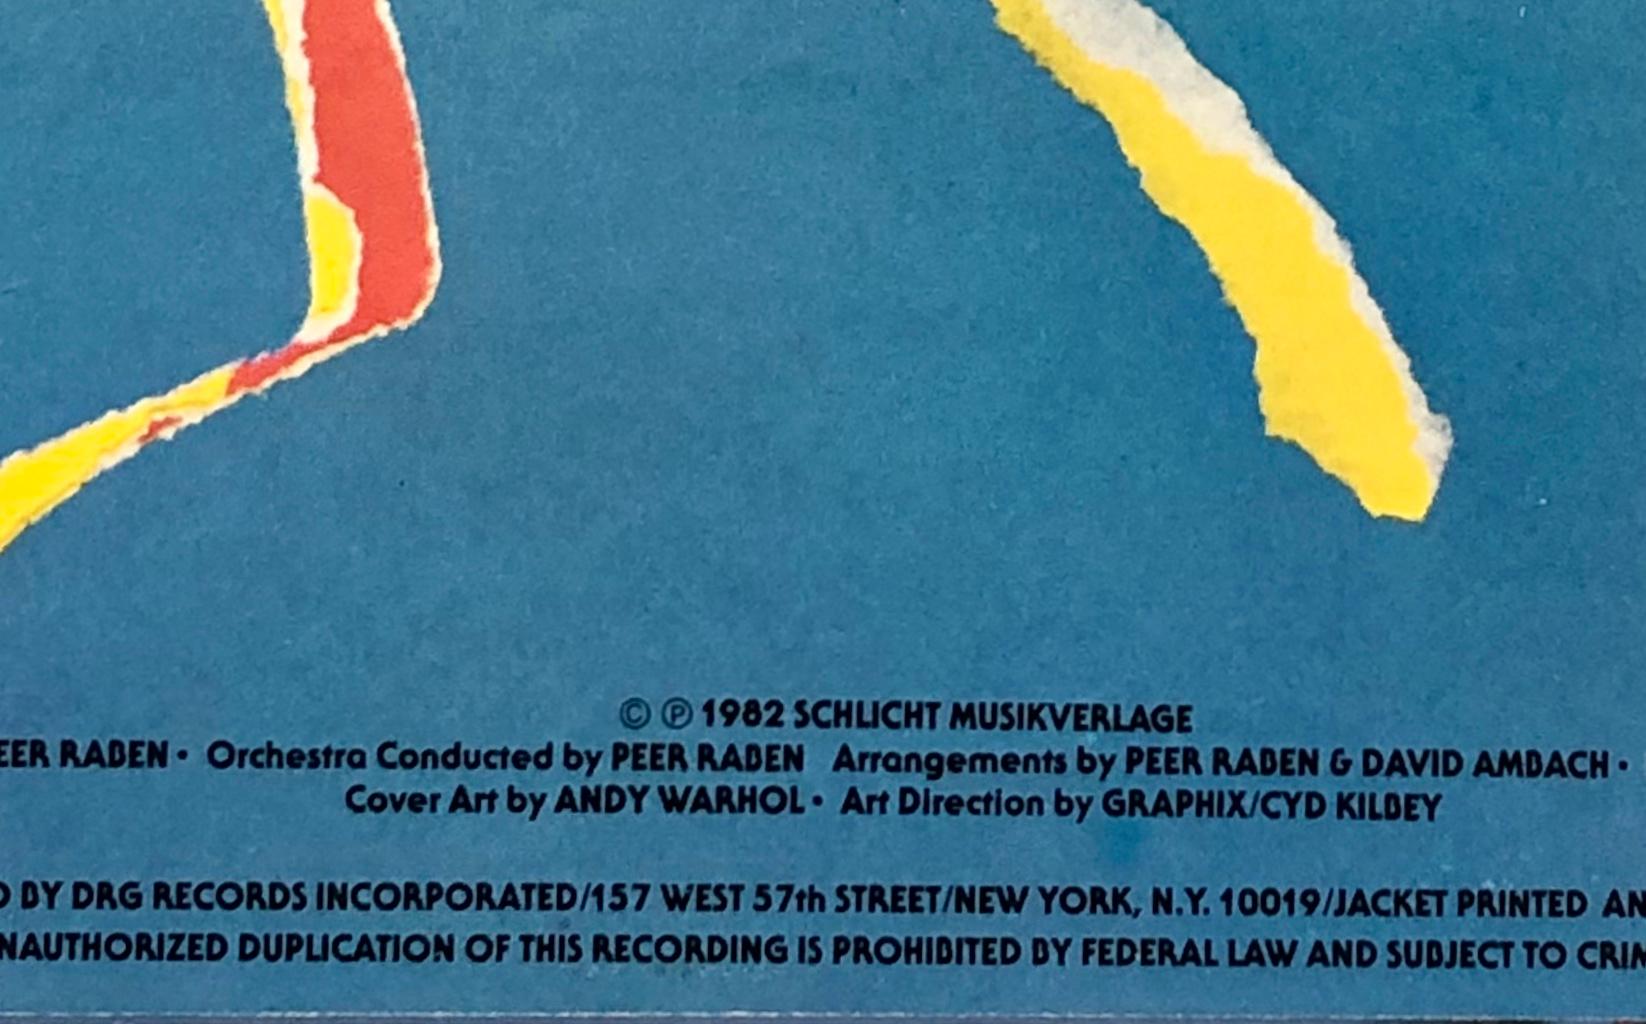 1982 1. Pressung, Querelle-Vinylalbum mit Original-Coverart von Andy Warhol. Raisonner Katalog: Paul Marechal: Andy Warhol, The Complete Commissioned Record Covers. 

Umschlag: Offsetdruck von Warhols Originalsiebdruck aus demselben Jahr. 
12 x 12